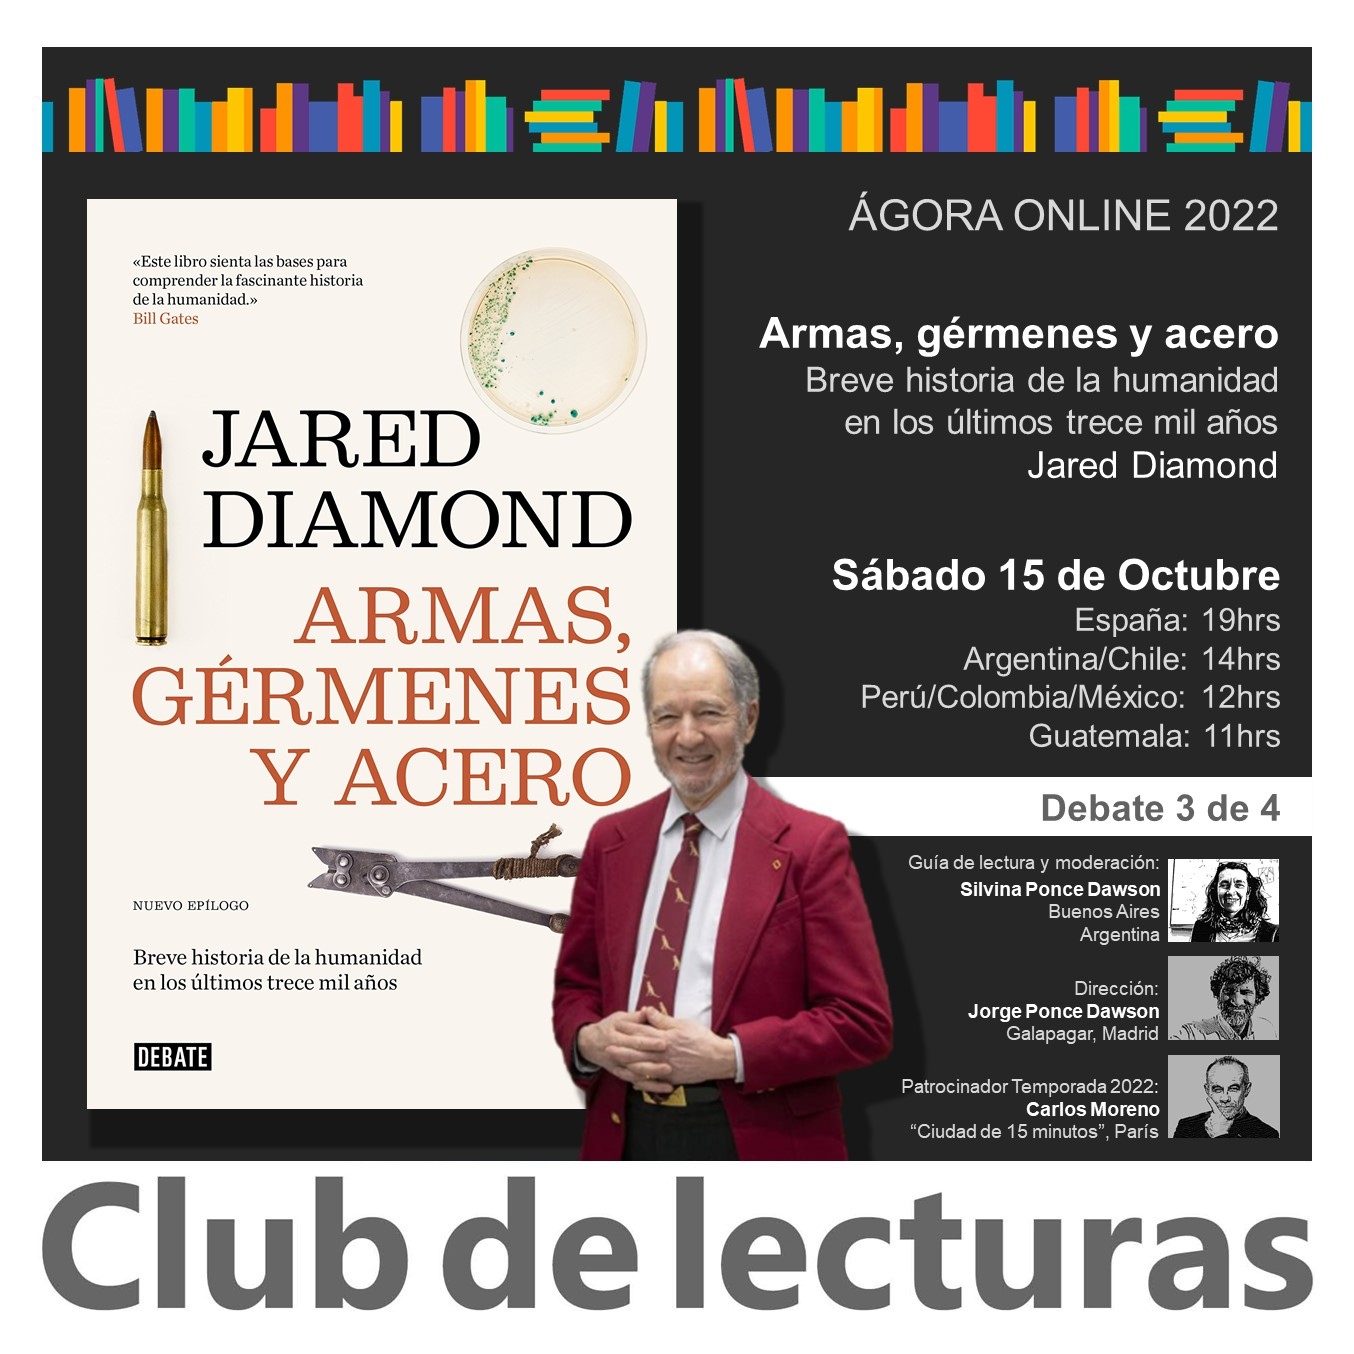 Armas, gérmenes y acero de Jared Diamond - Debate 3 de 4 - 15 de Octubre  2022 - Club de Lecturas - www.clubdelecturas.com - Podcast en iVoox